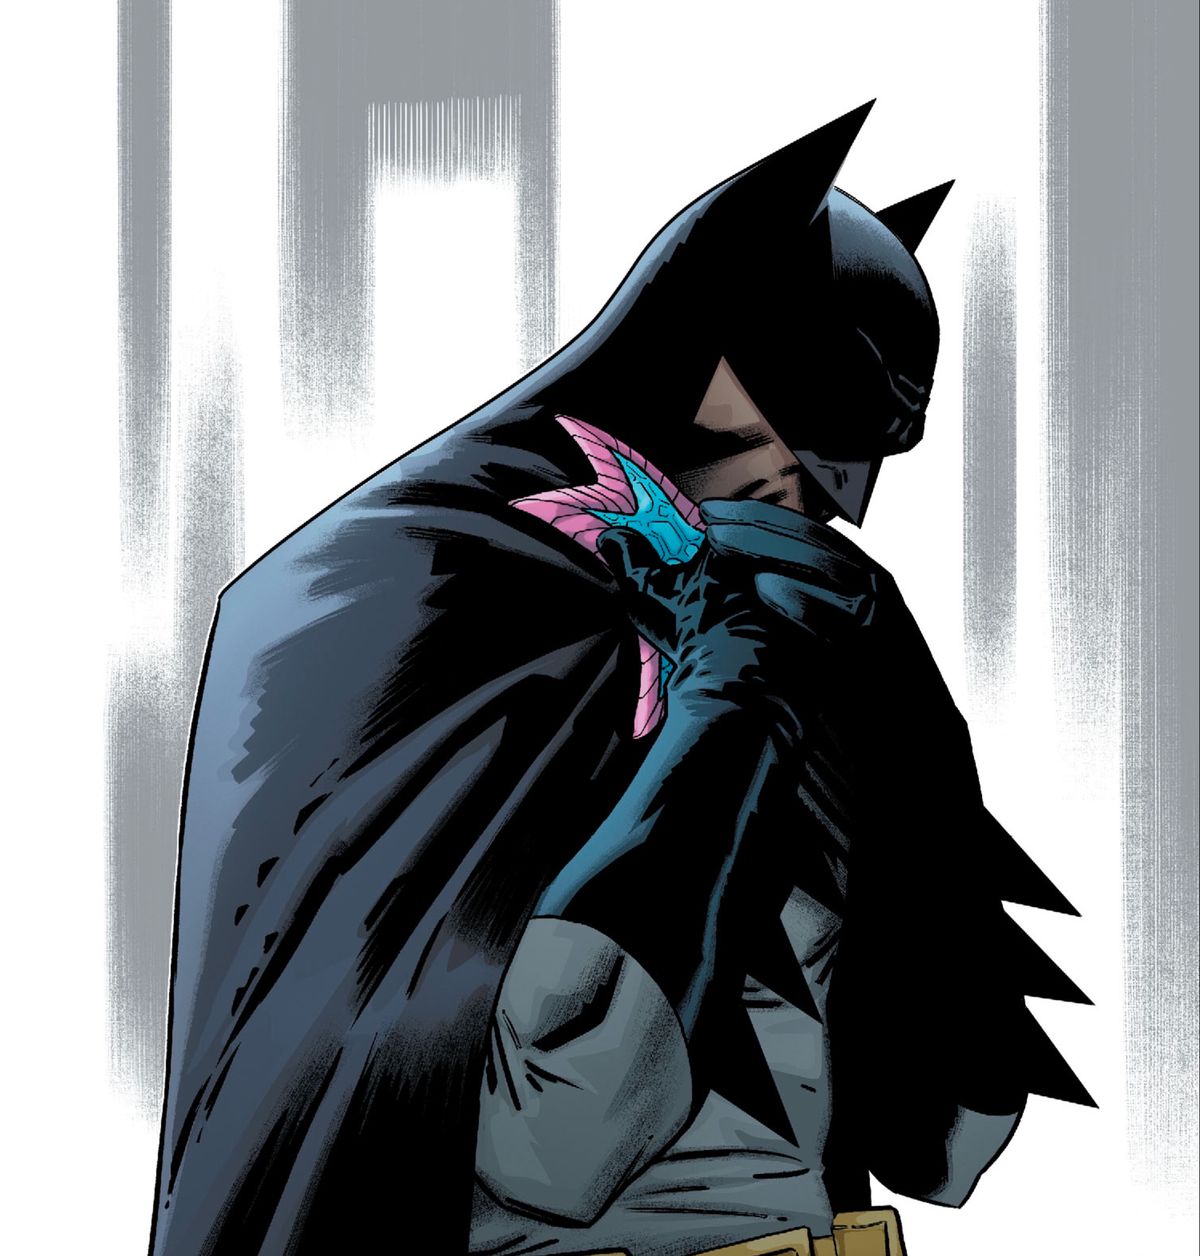 Jarro, che è una piccola stella marina blu proveniente dallo spazio con un bordo rosa e un occhio centrale, condivide un abbraccio con Batman, in Justice League #29, DC Comics (2019).